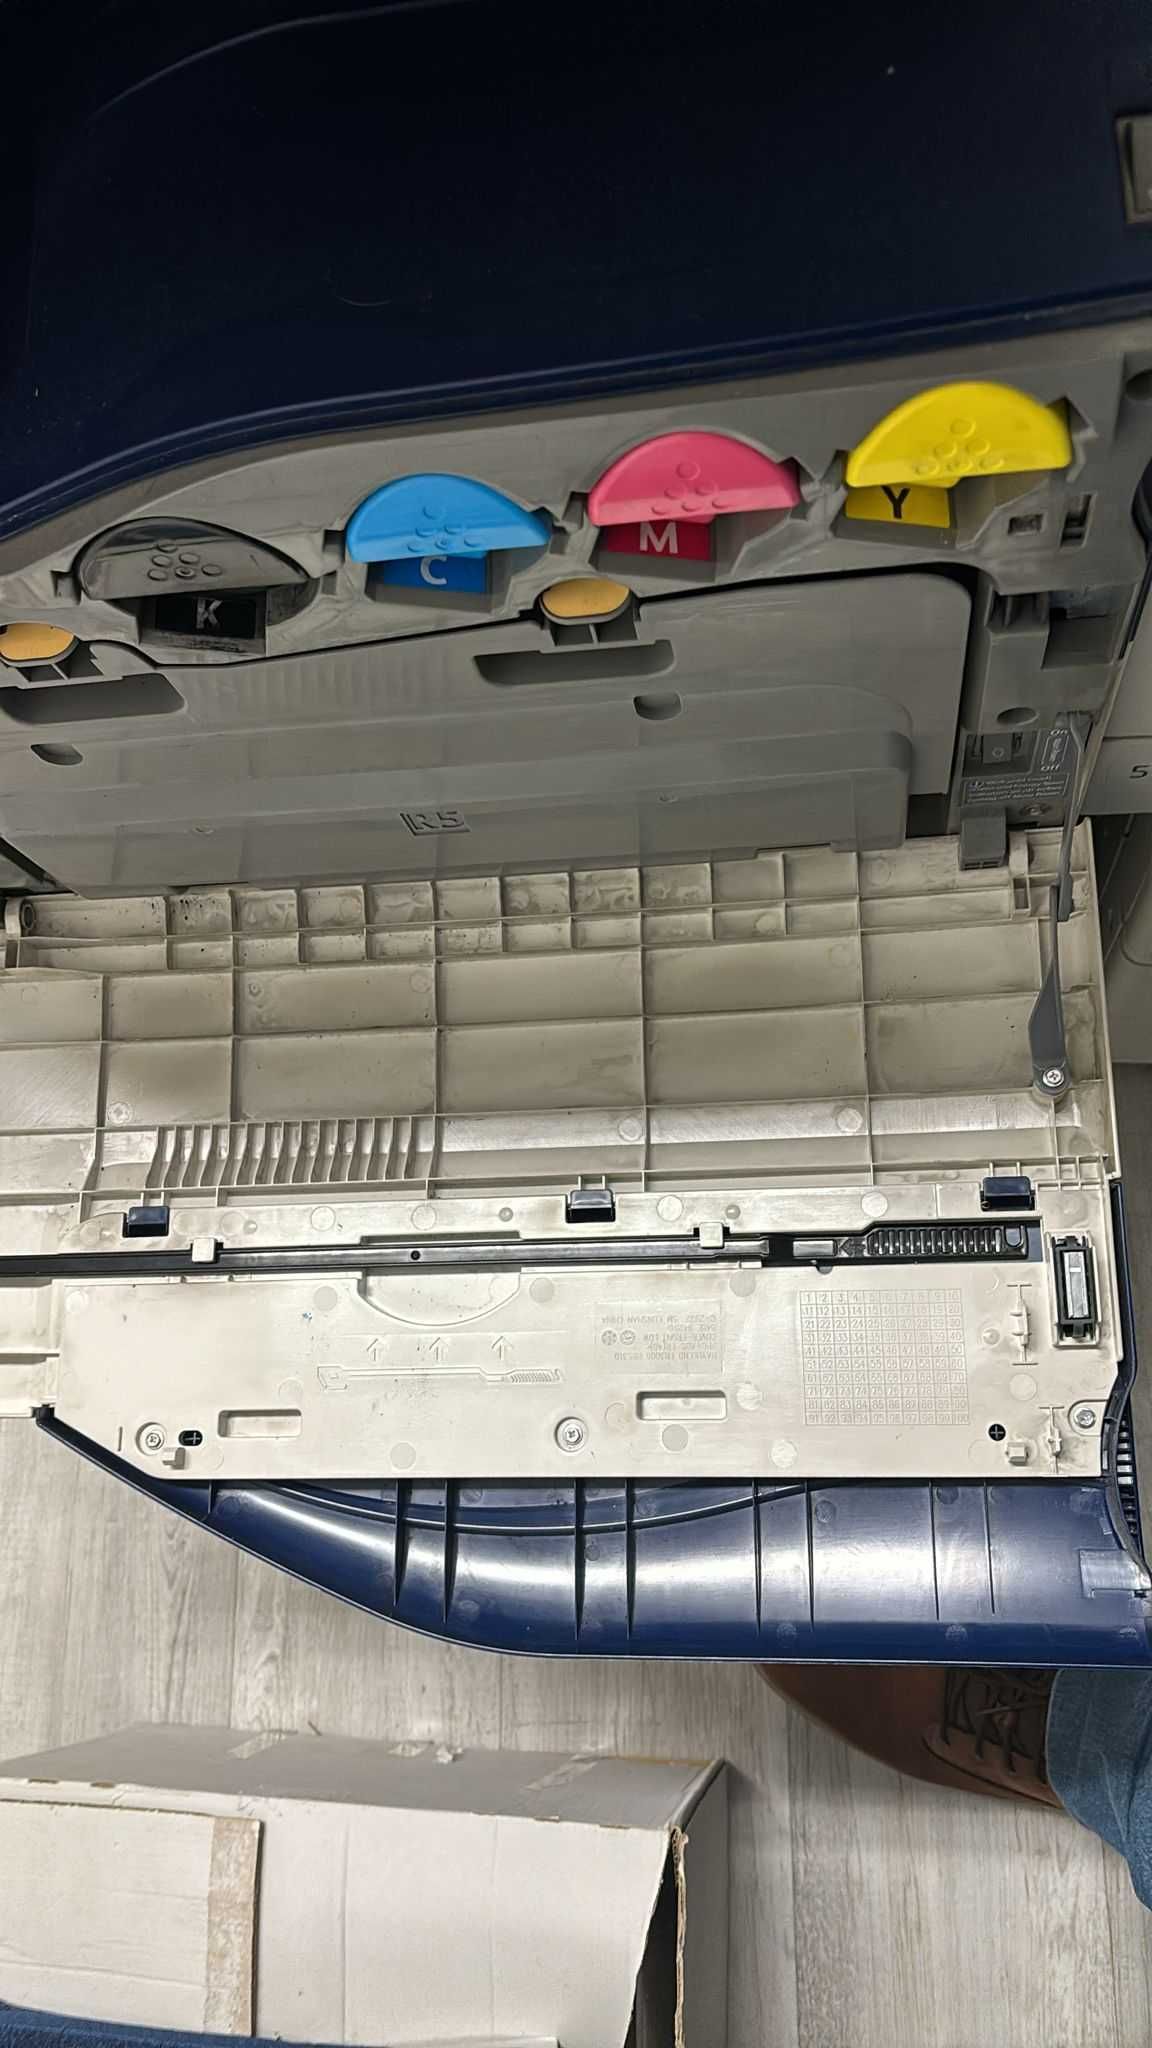 4 Impressoras Xerox 7120